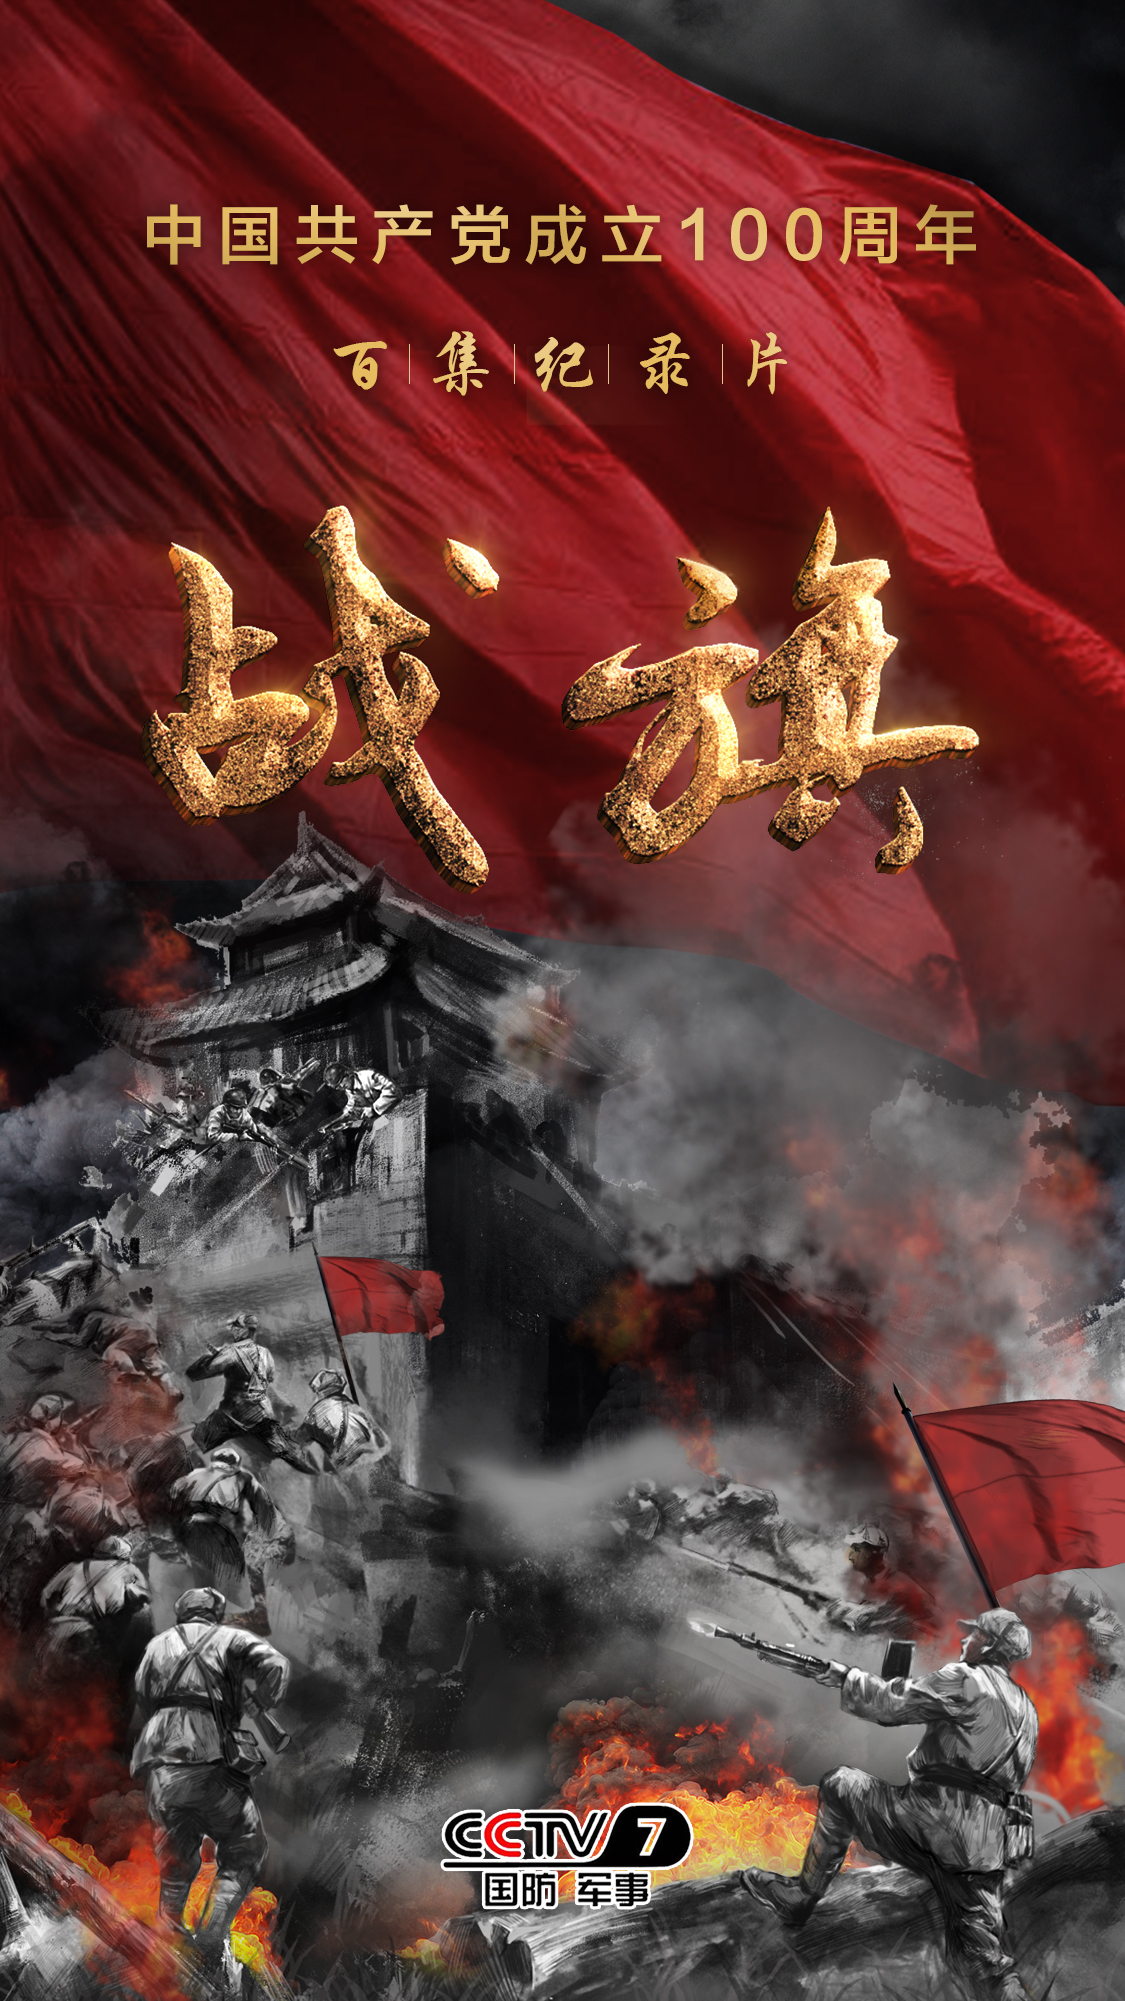 百集纪录片《战旗》永久收藏在中国人民革命军事博物馆。